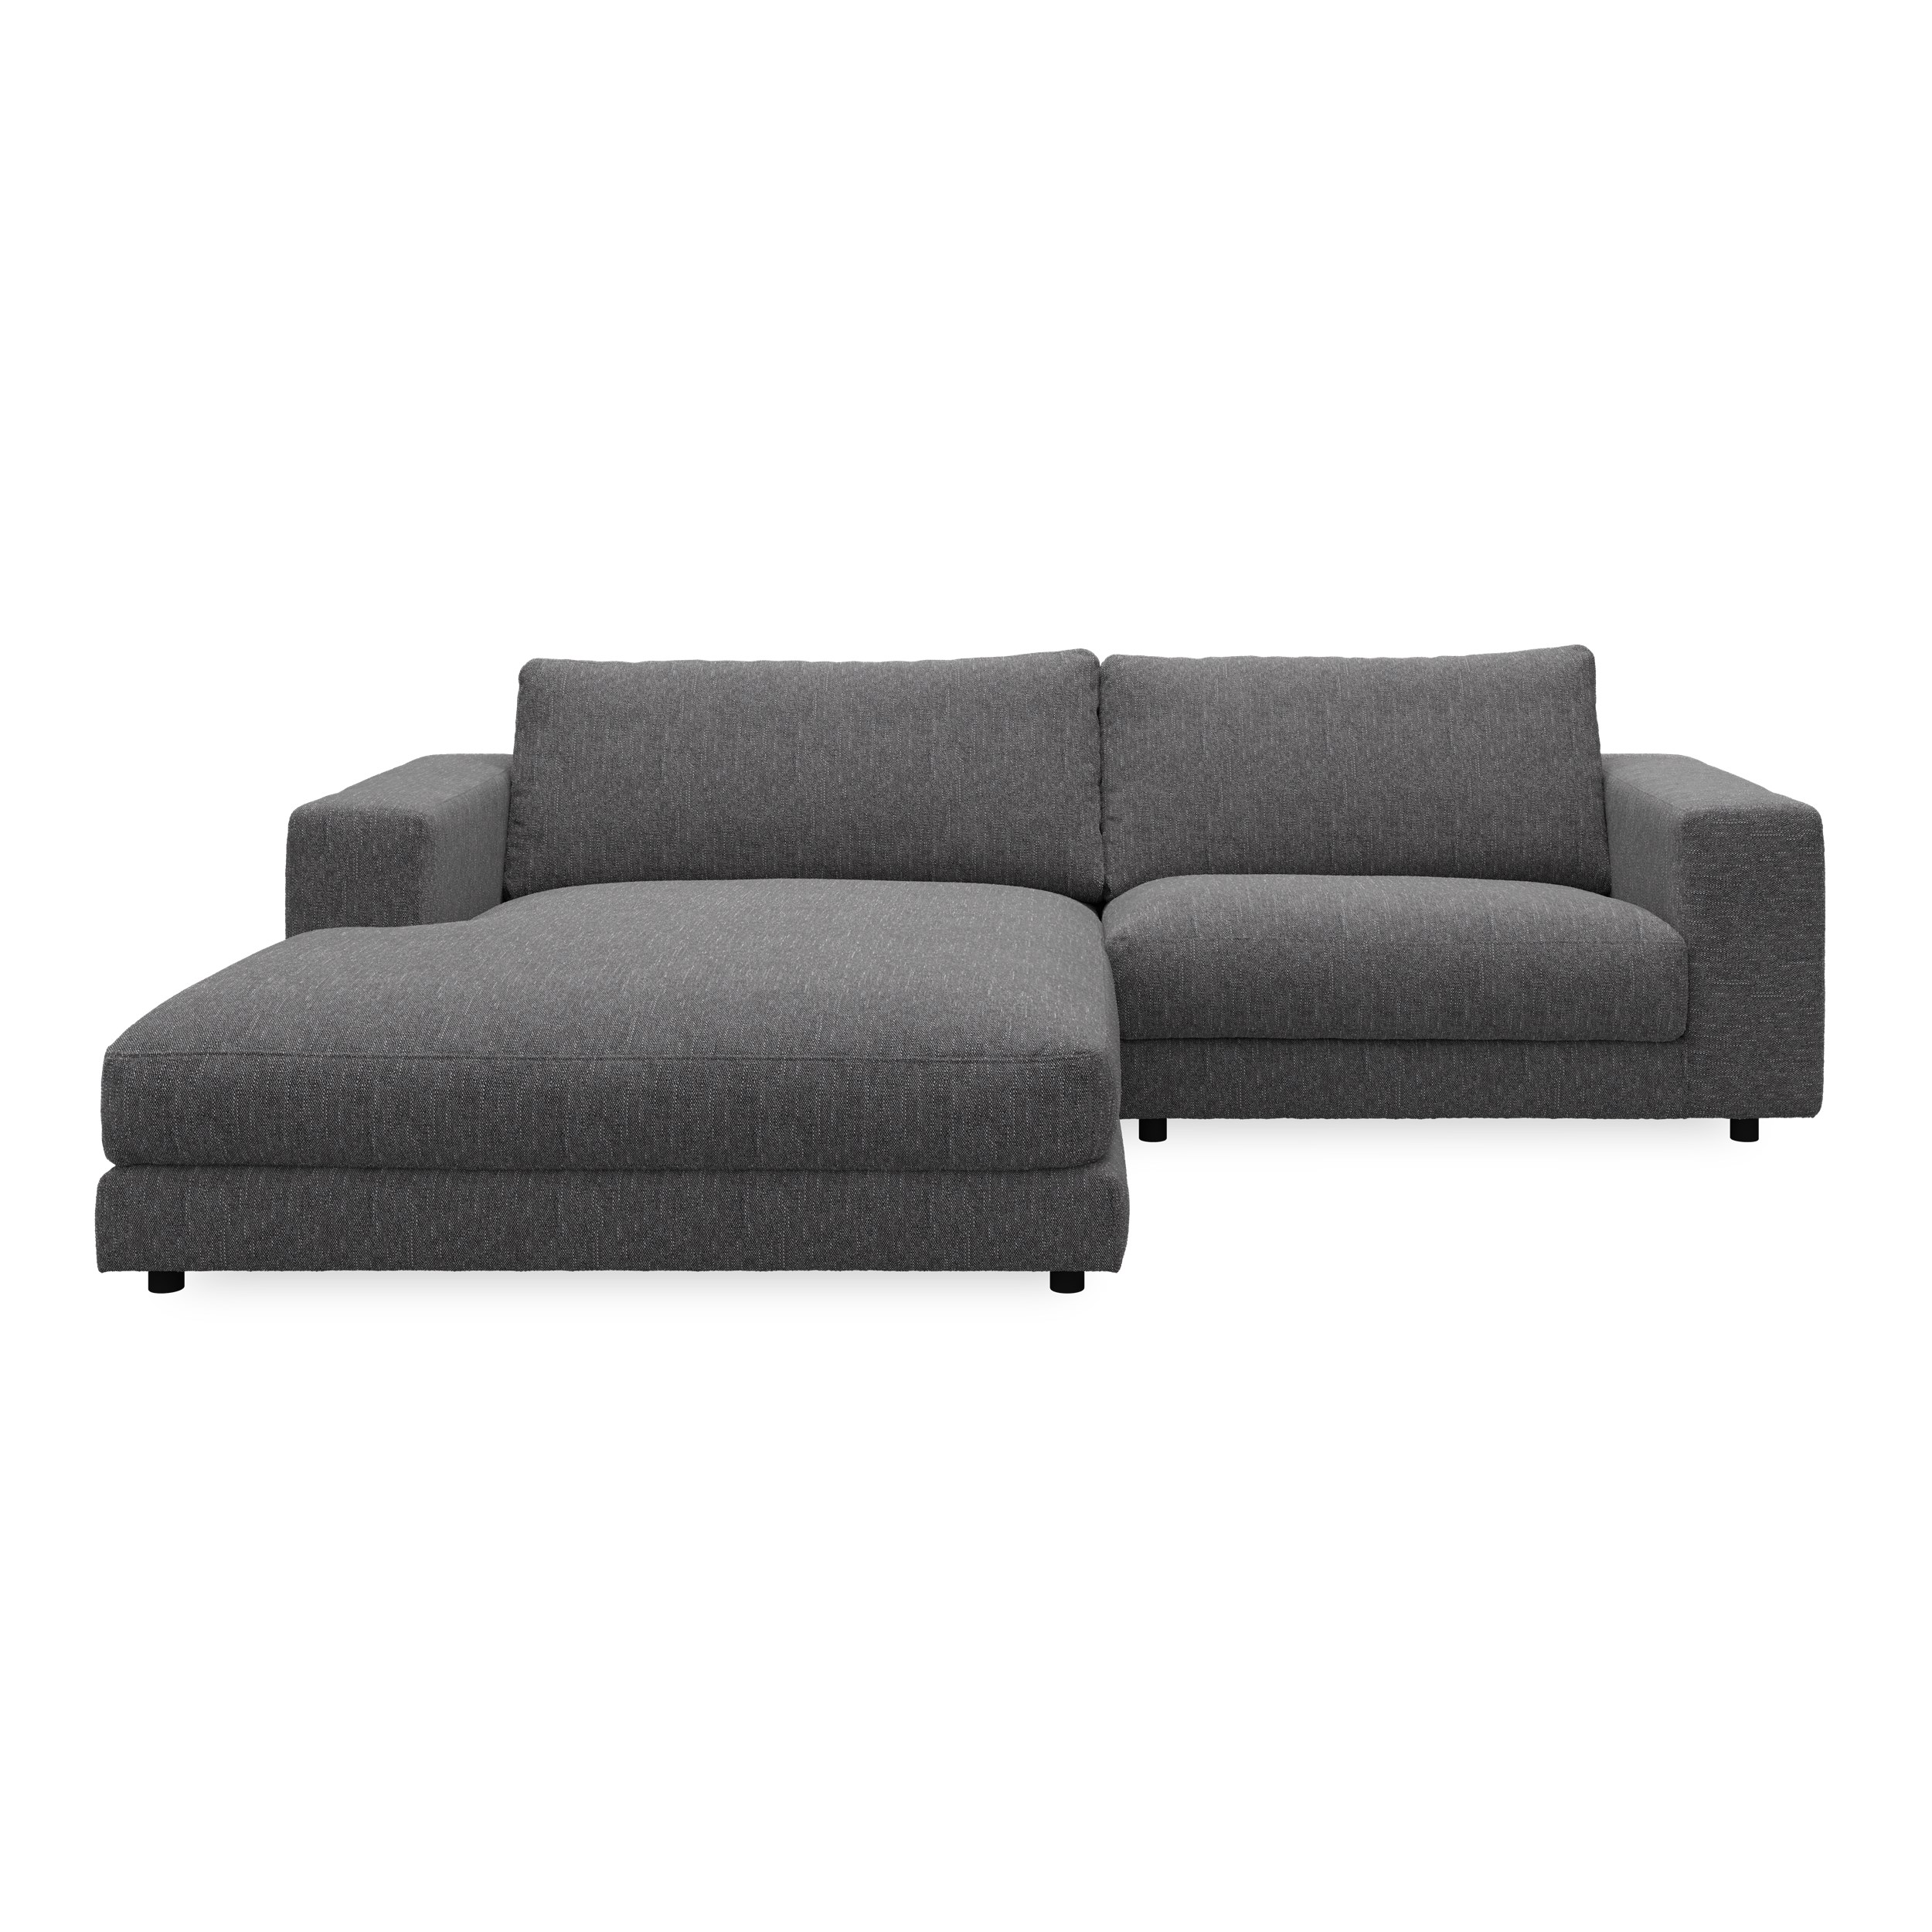 Bennent vänstervänd soffa med schäslong - Yelda Grey klädsel, ben i svart plast och S:skum/fib/din/sili R:Dun/skum